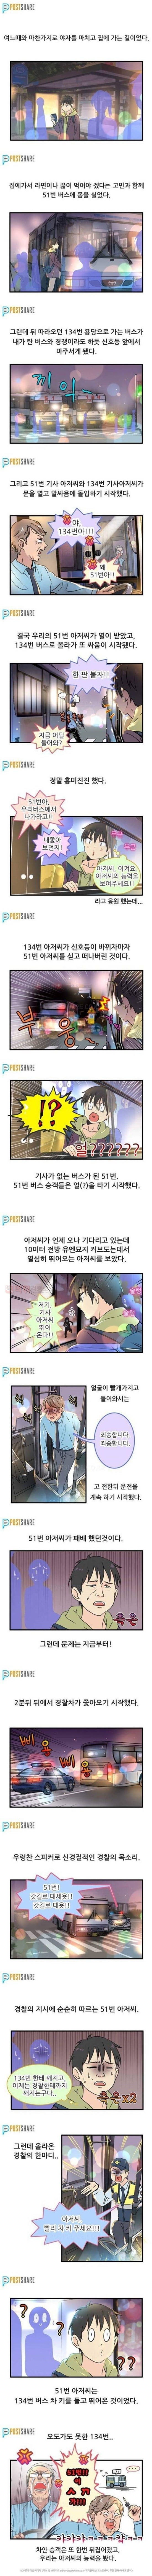 먹튀검증소 유머 부산버스 전설의 레전드